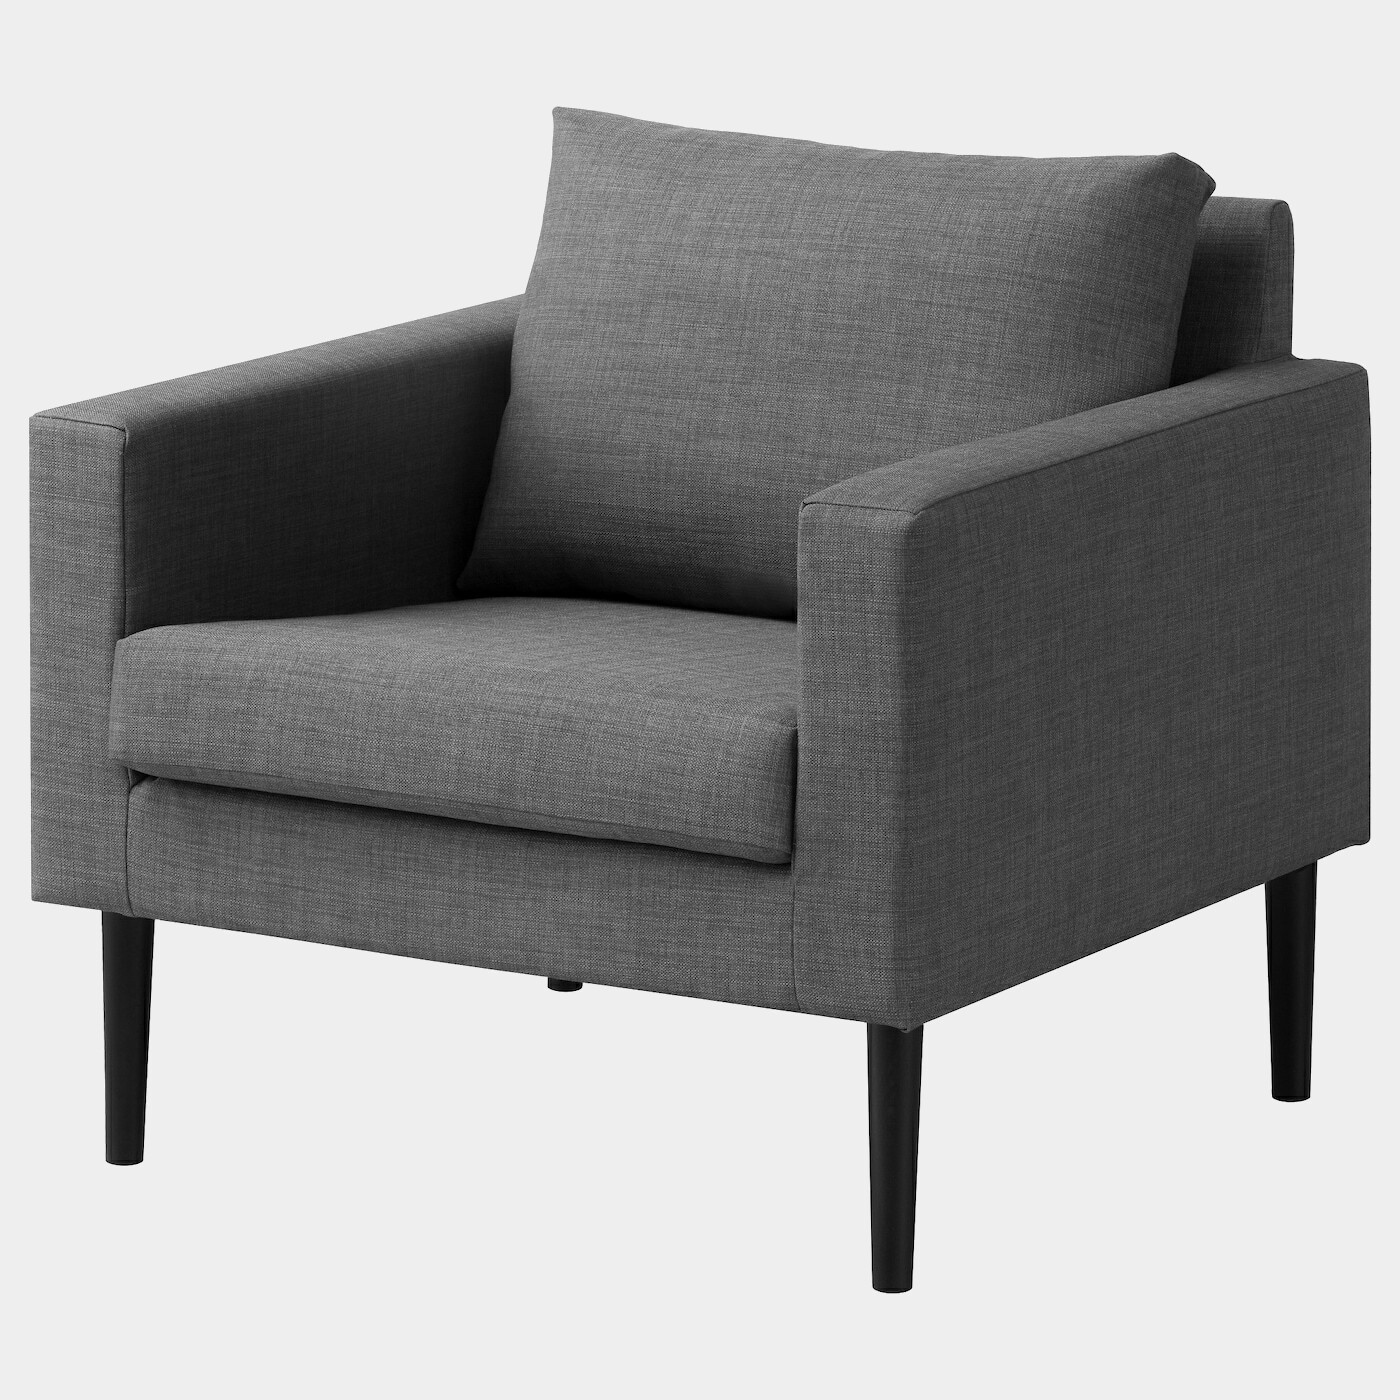 FRIHETEN Sessel  - Sessel & Récamieren - Möbel Ideen für dein Zuhause von Home Trends. Möbel Trends von Social Media Influencer für dein Skandi Zuhause.